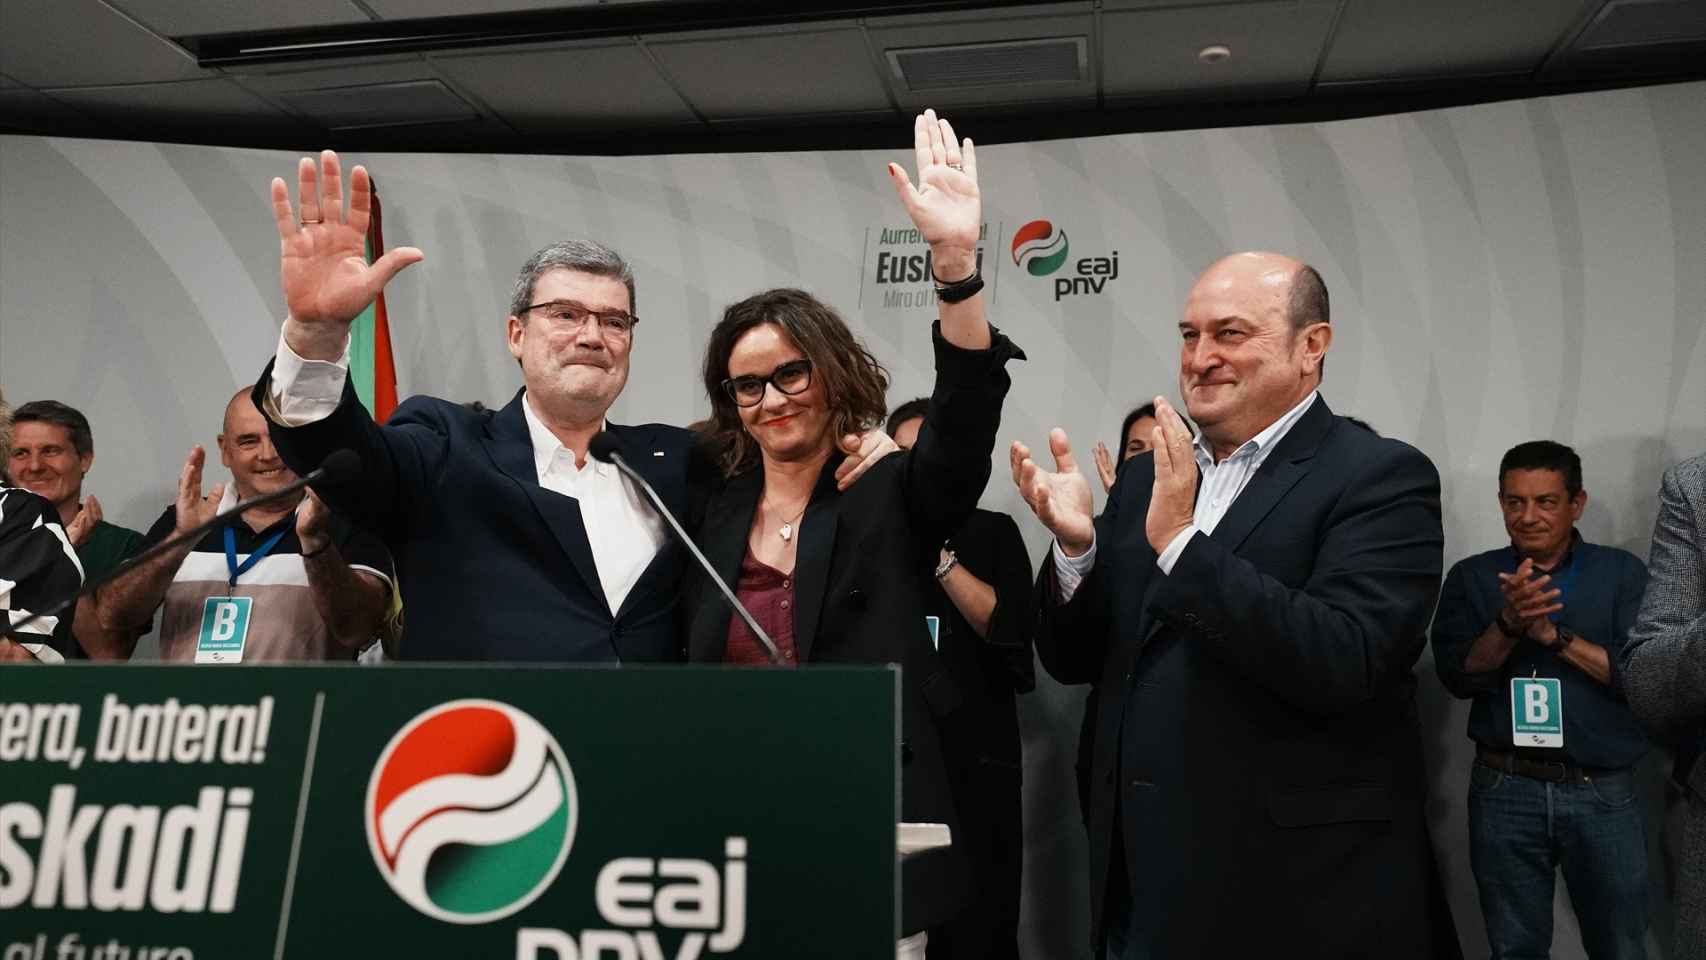 Aburto mantiene la 'makila' en Bilbao y EH Bildu da el 'sorpasso' a PSE como segunda fuerza